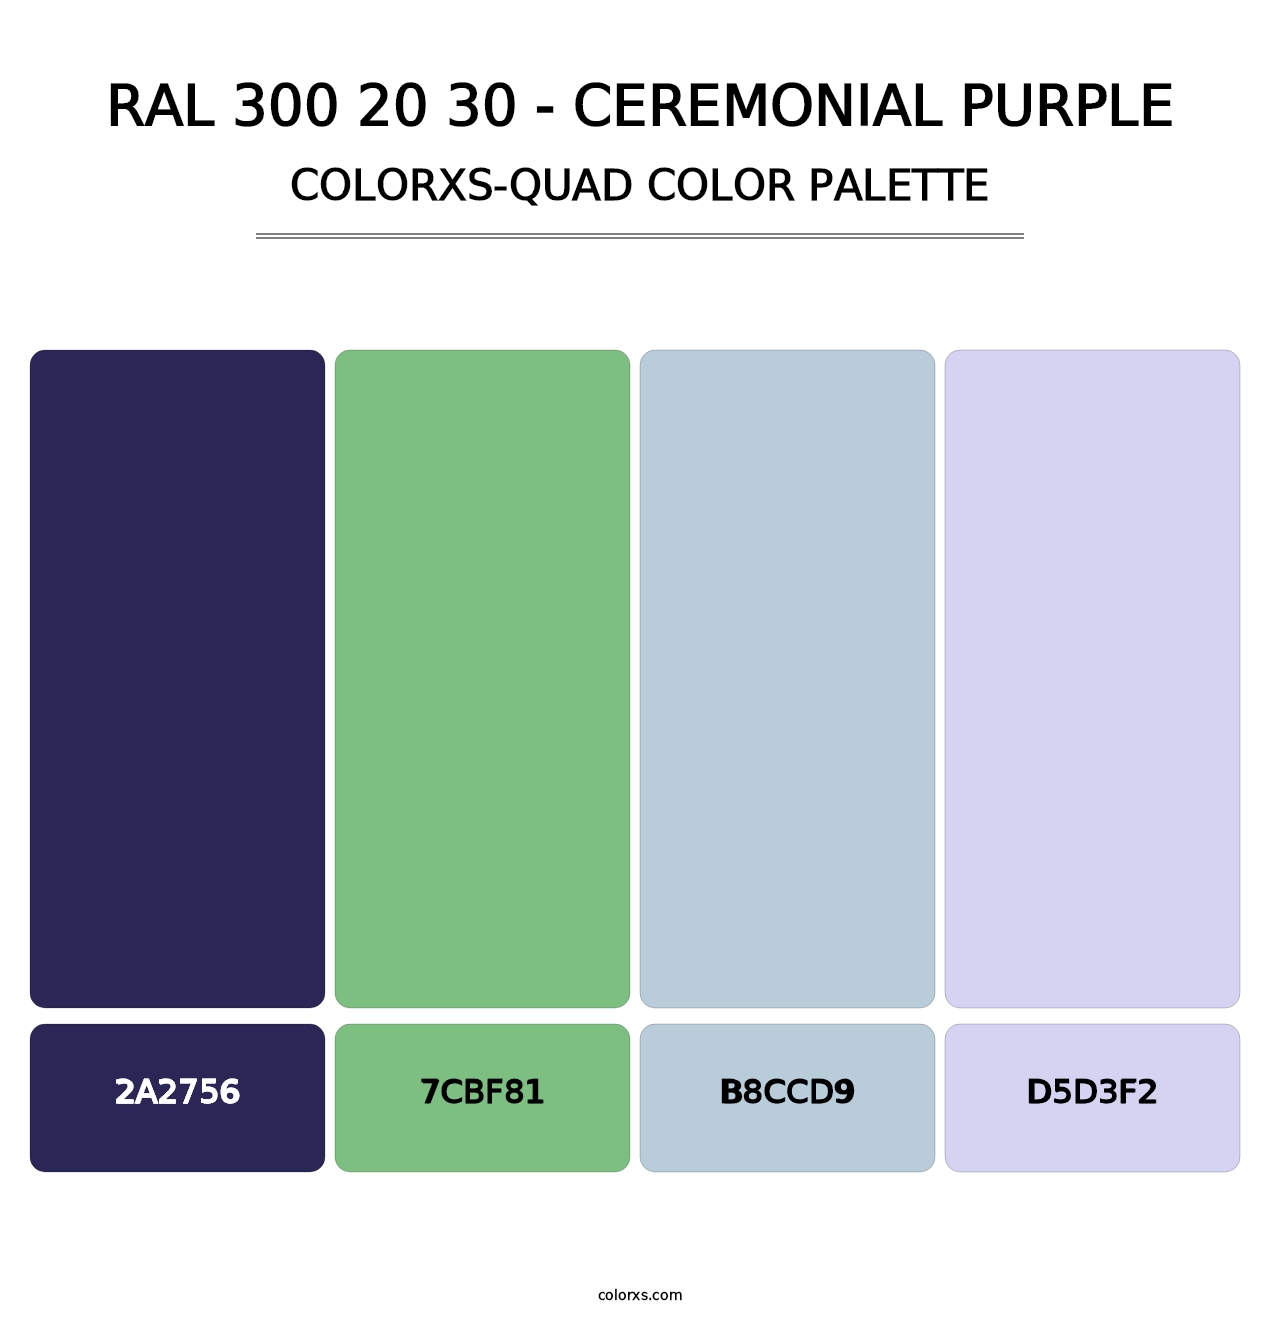 RAL 300 20 30 - Ceremonial Purple - Colorxs Quad Palette